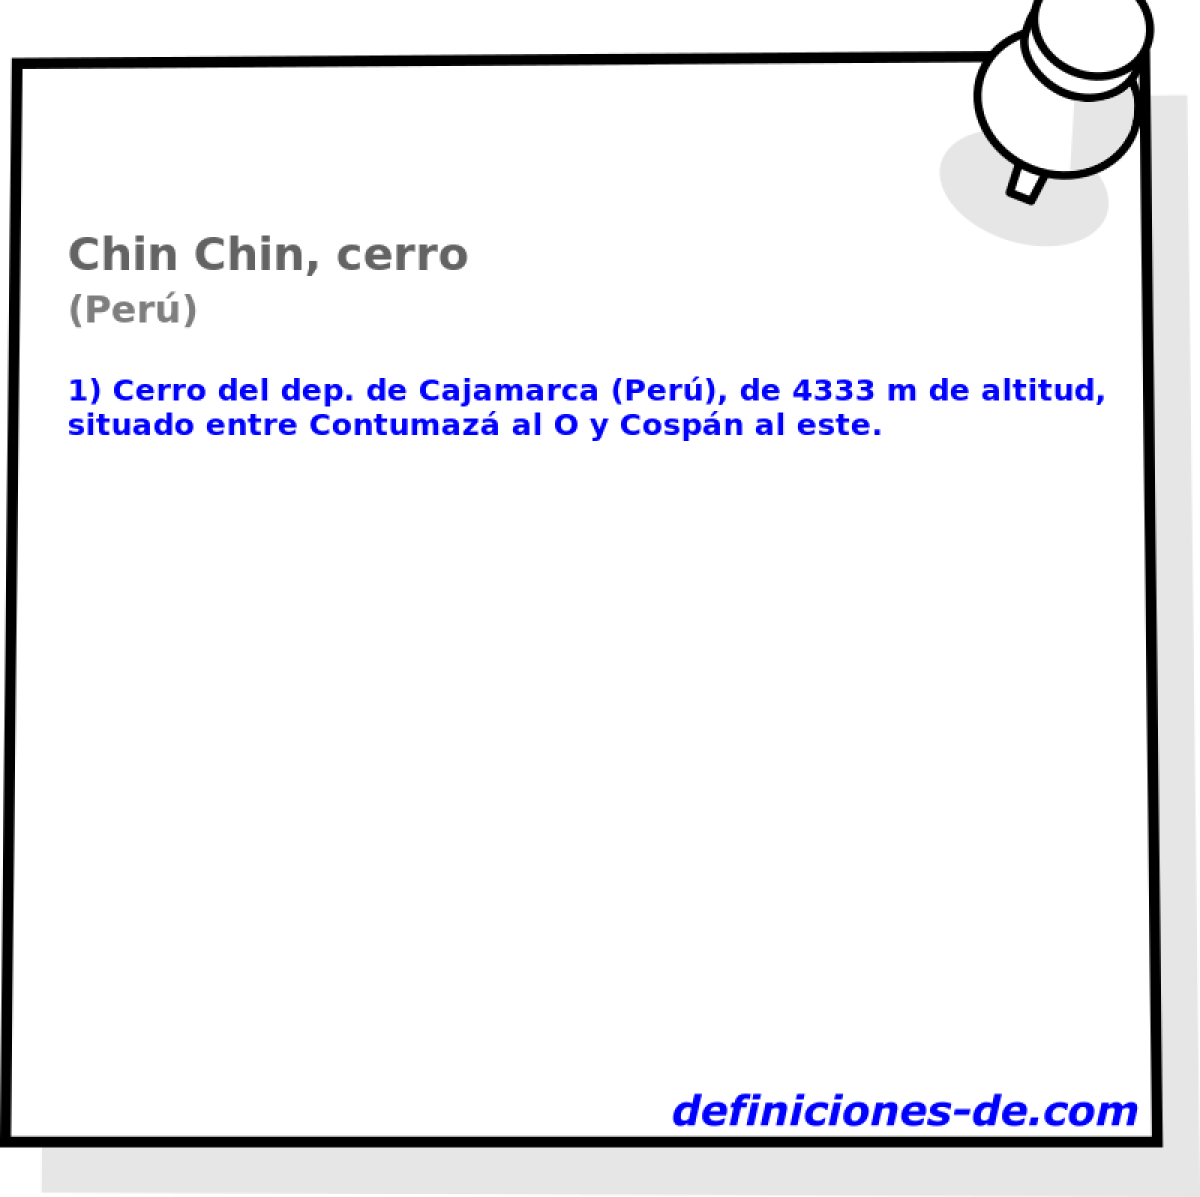 Chin Chin, cerro (Per)